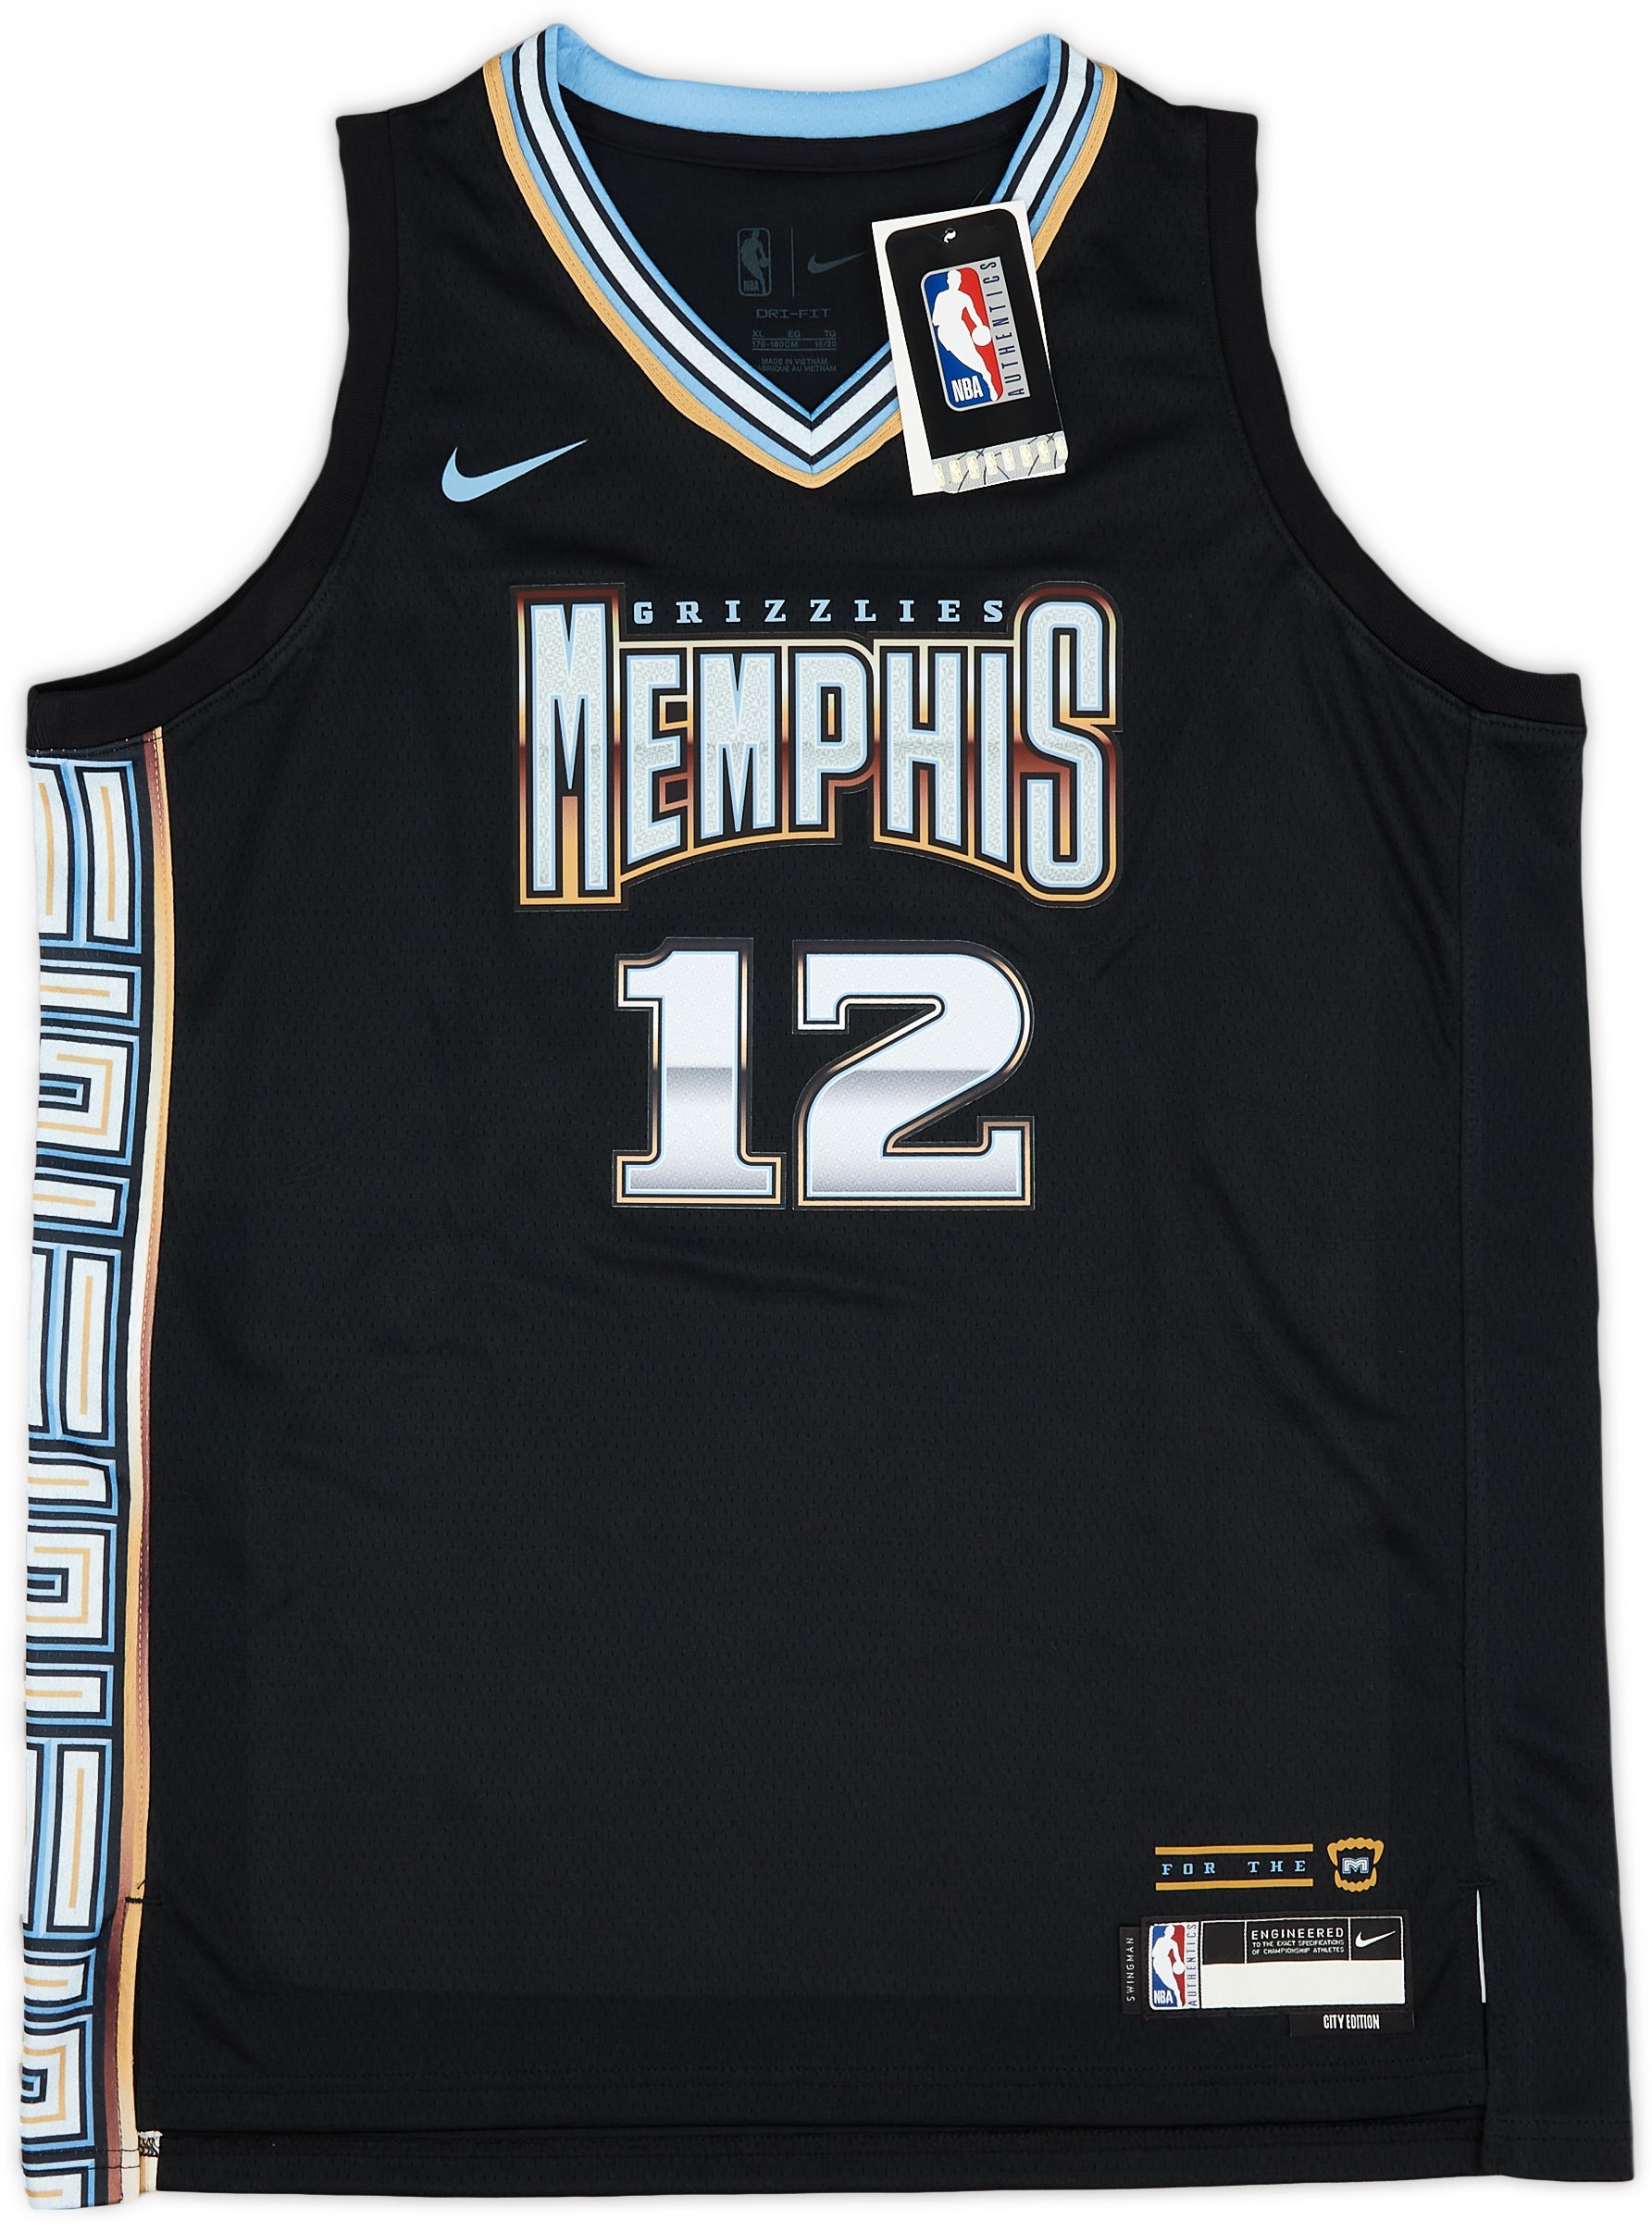 Size M Memphis Grizzlies NBA Jerseys for sale